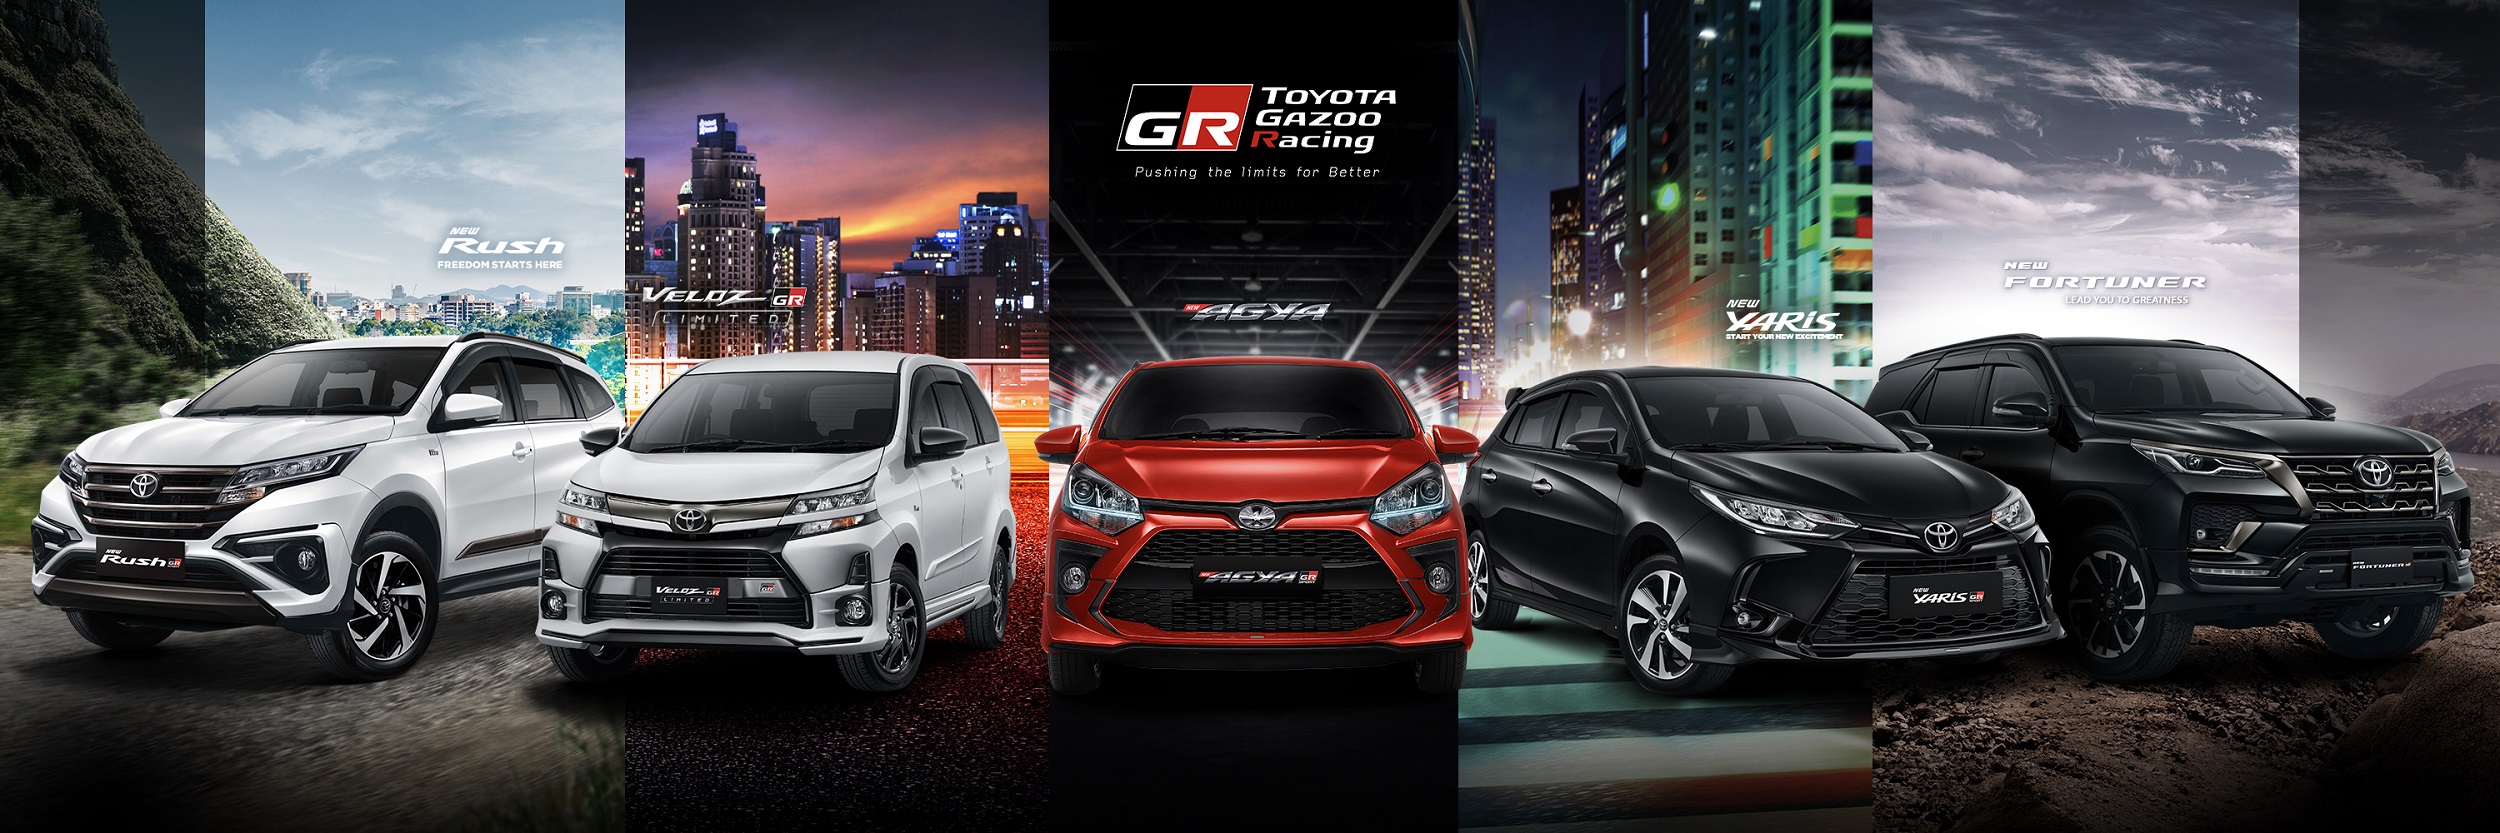 Toyota Gazoo Racing Hadir Dengan 5 Produk Unggulan